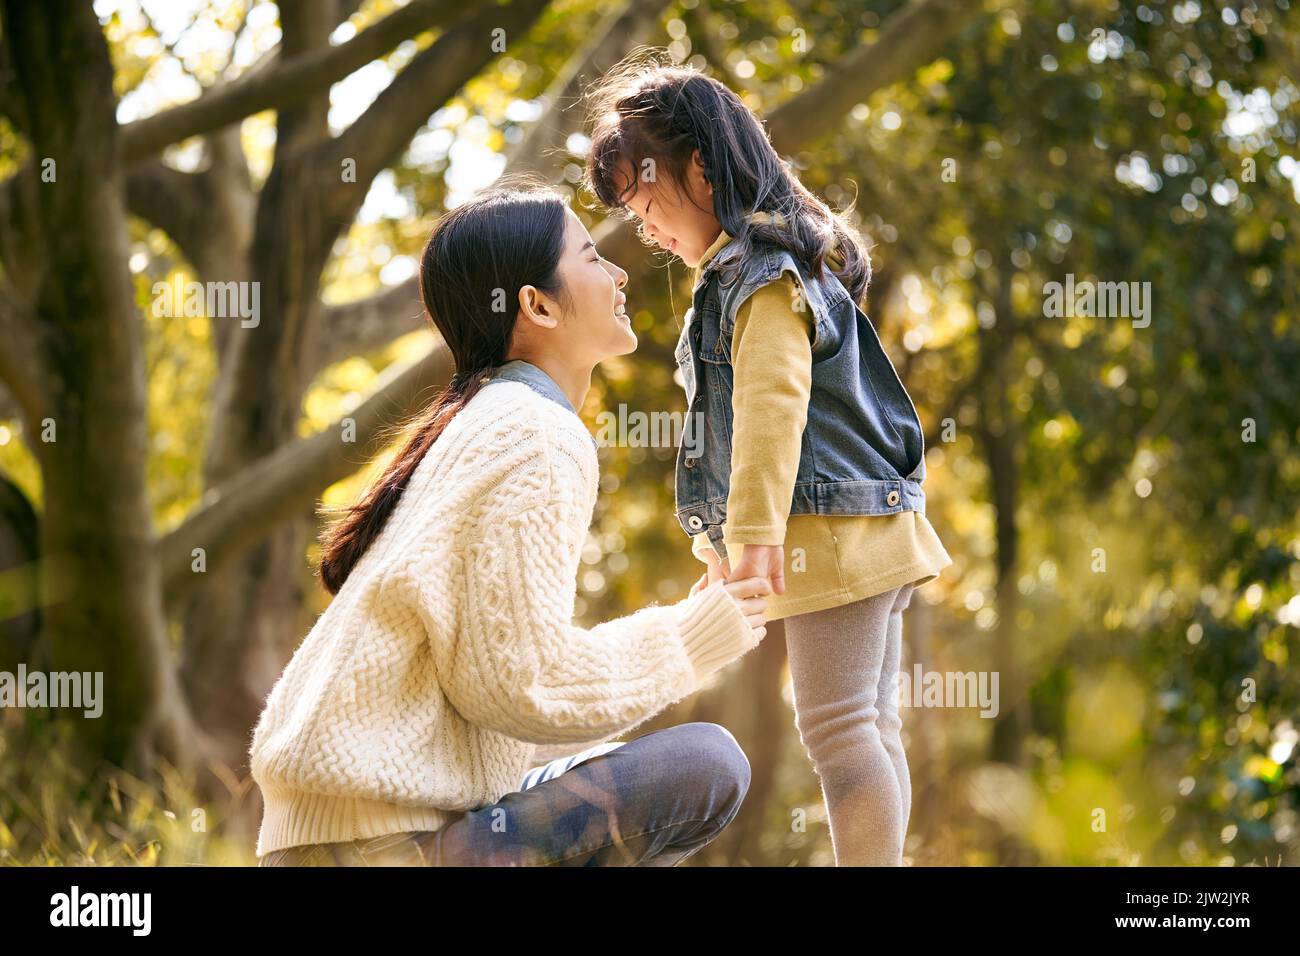 joven madre asiática e hija preescolar disfrutando de la naturaleza pasando un buen rato al aire libre en el parque Foto de stock